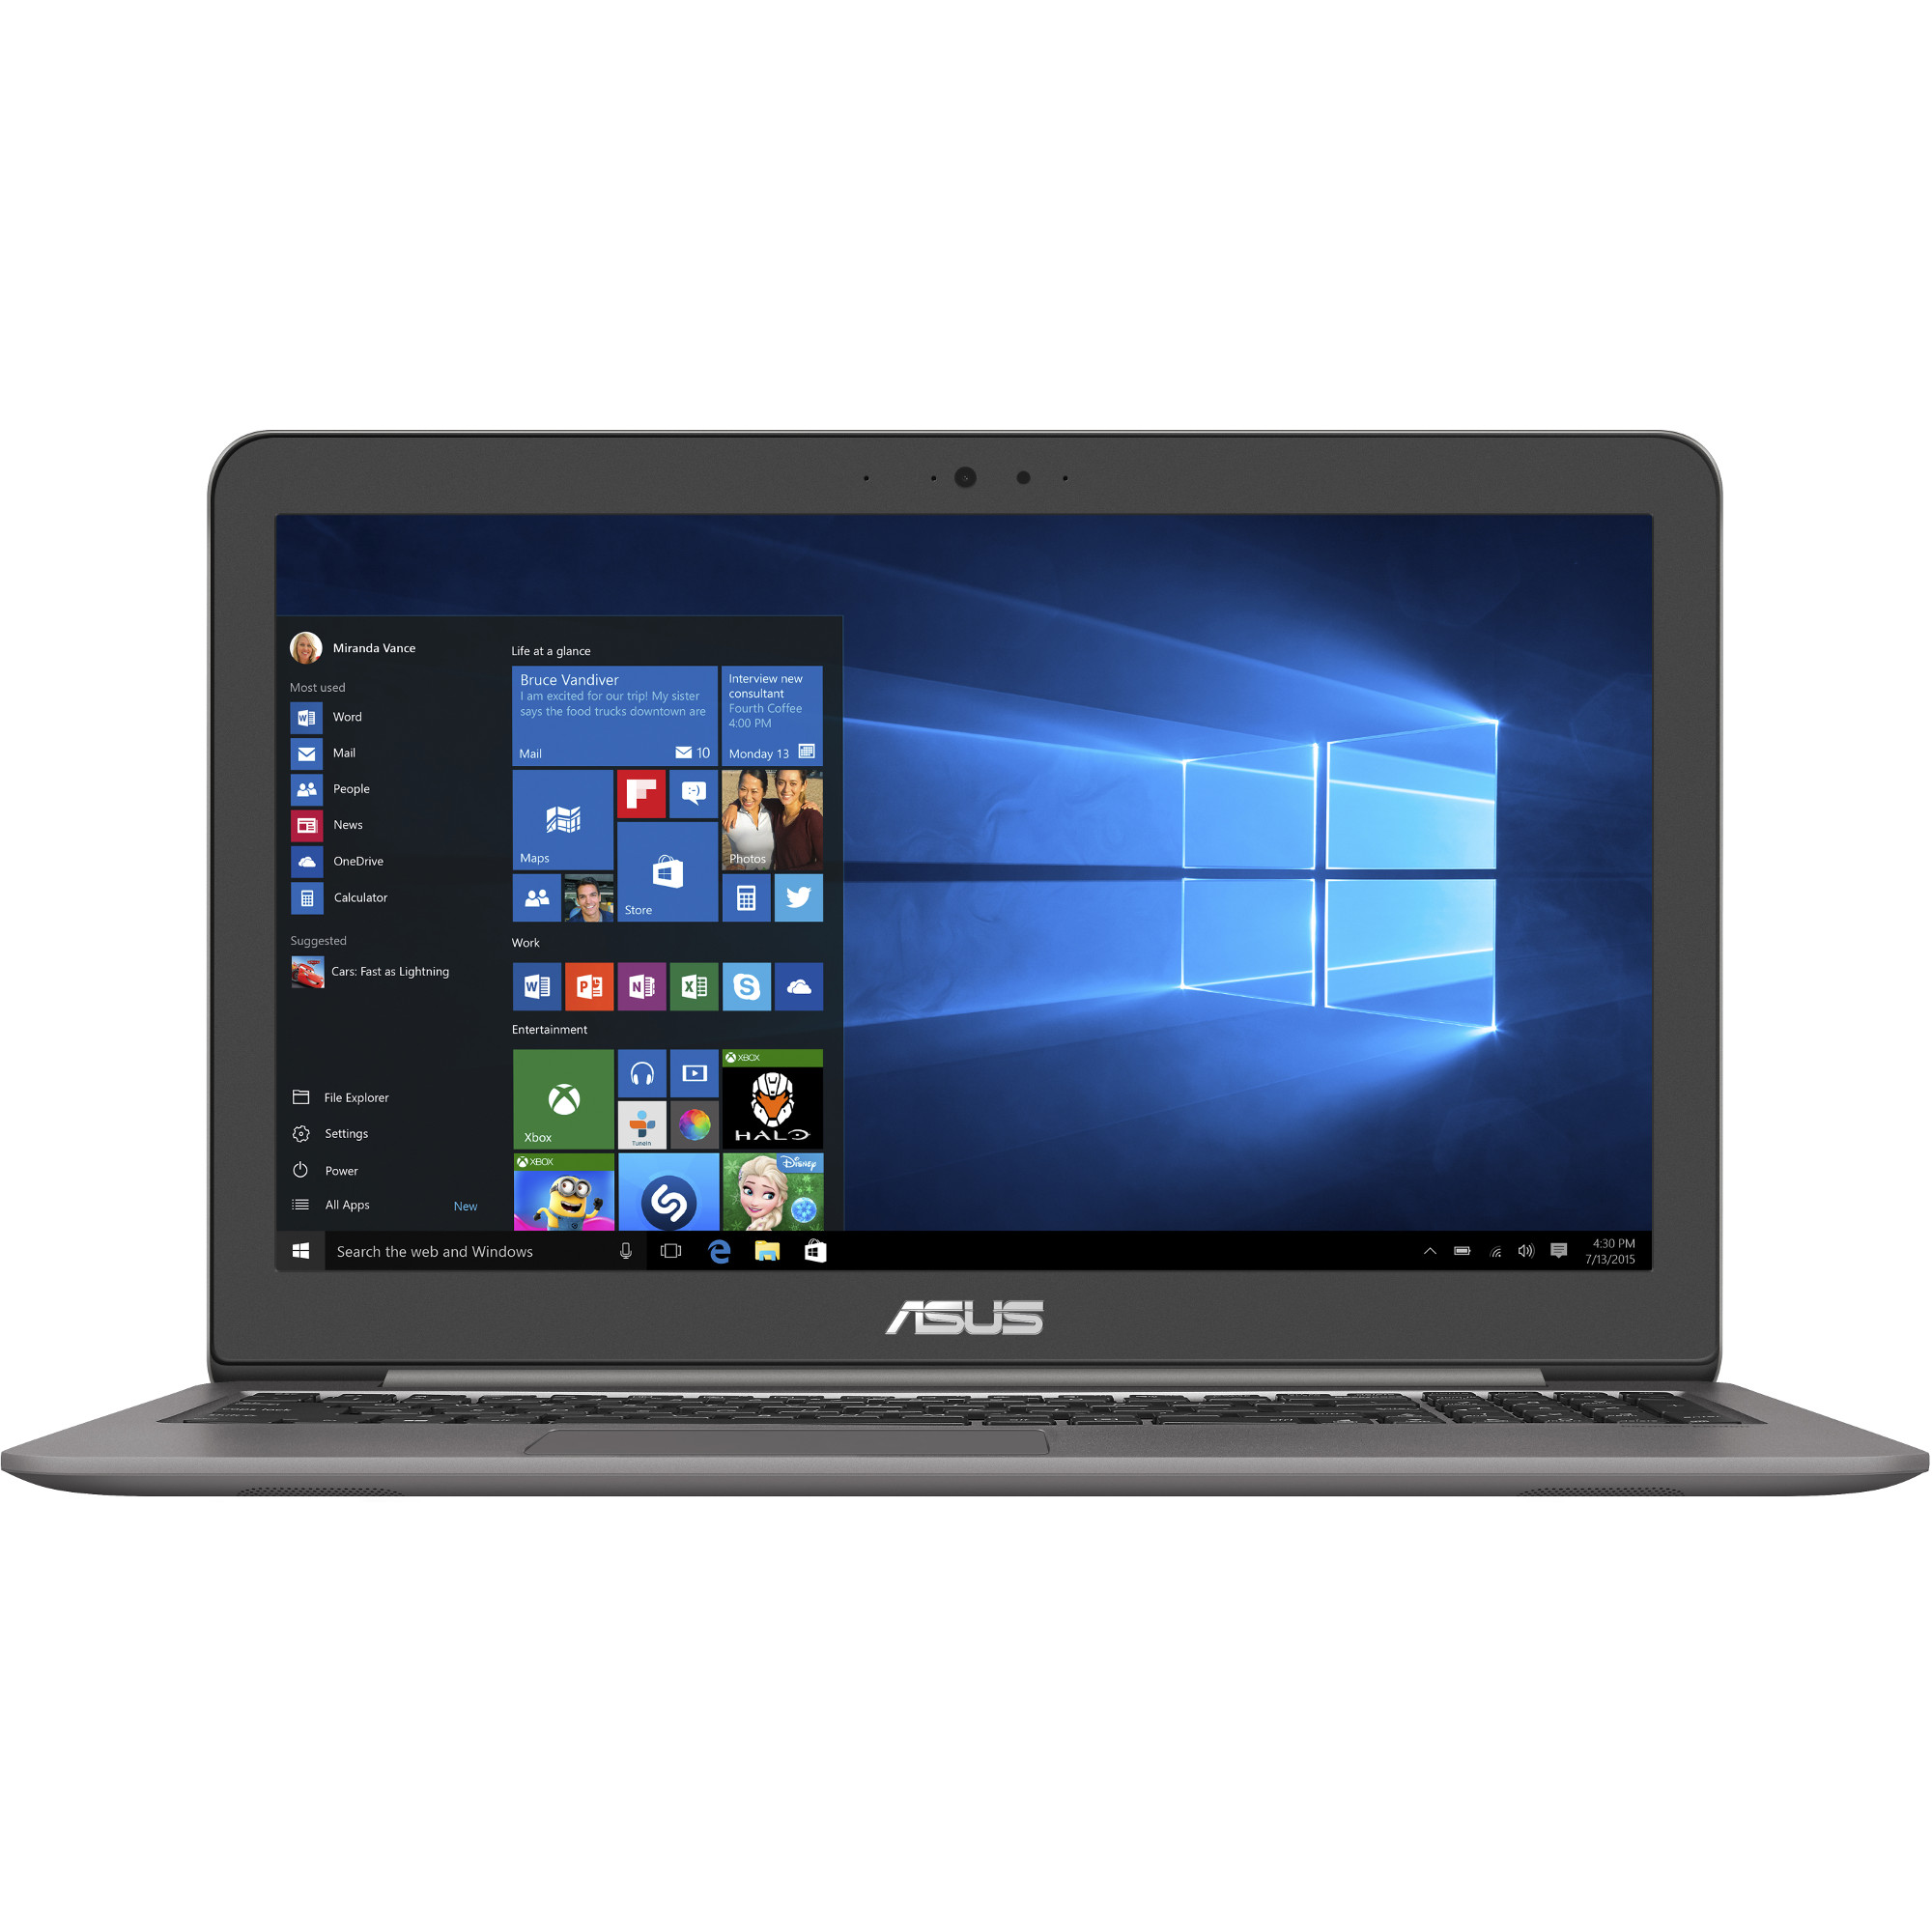 Laptop ASUS UX510UX, Intel i5-7200U, 8GB DDR4, HDD 1TB + SSD 128GB, nVidia GeForce GTX 950M 2GB, Windows 10